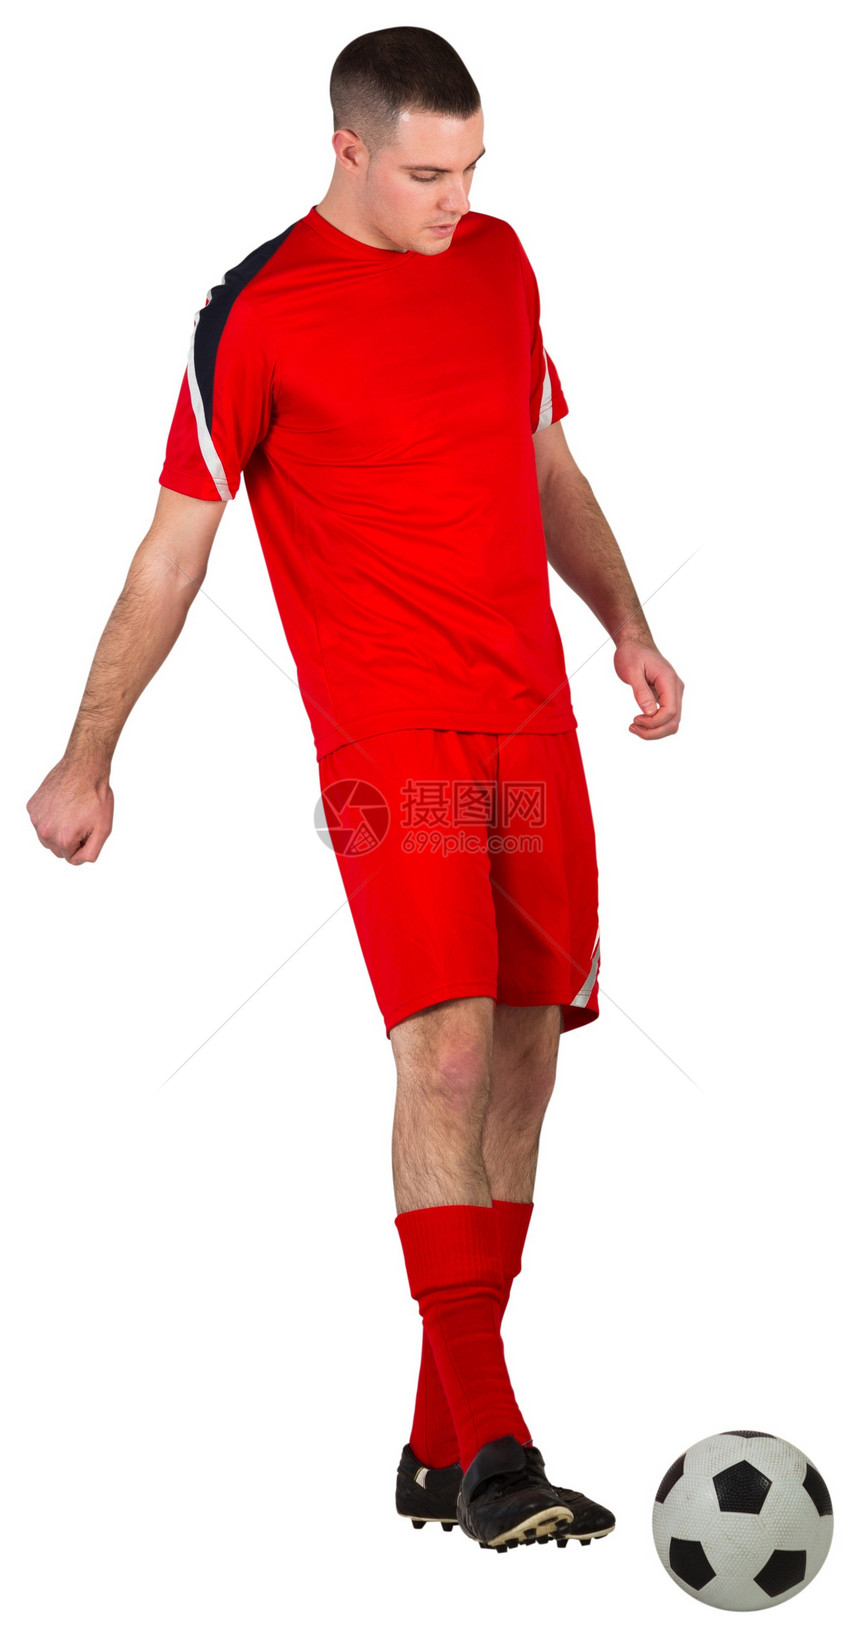 健身足球运动员与球赛播放器男人齿轮运动红色运动服活动男性白色图片